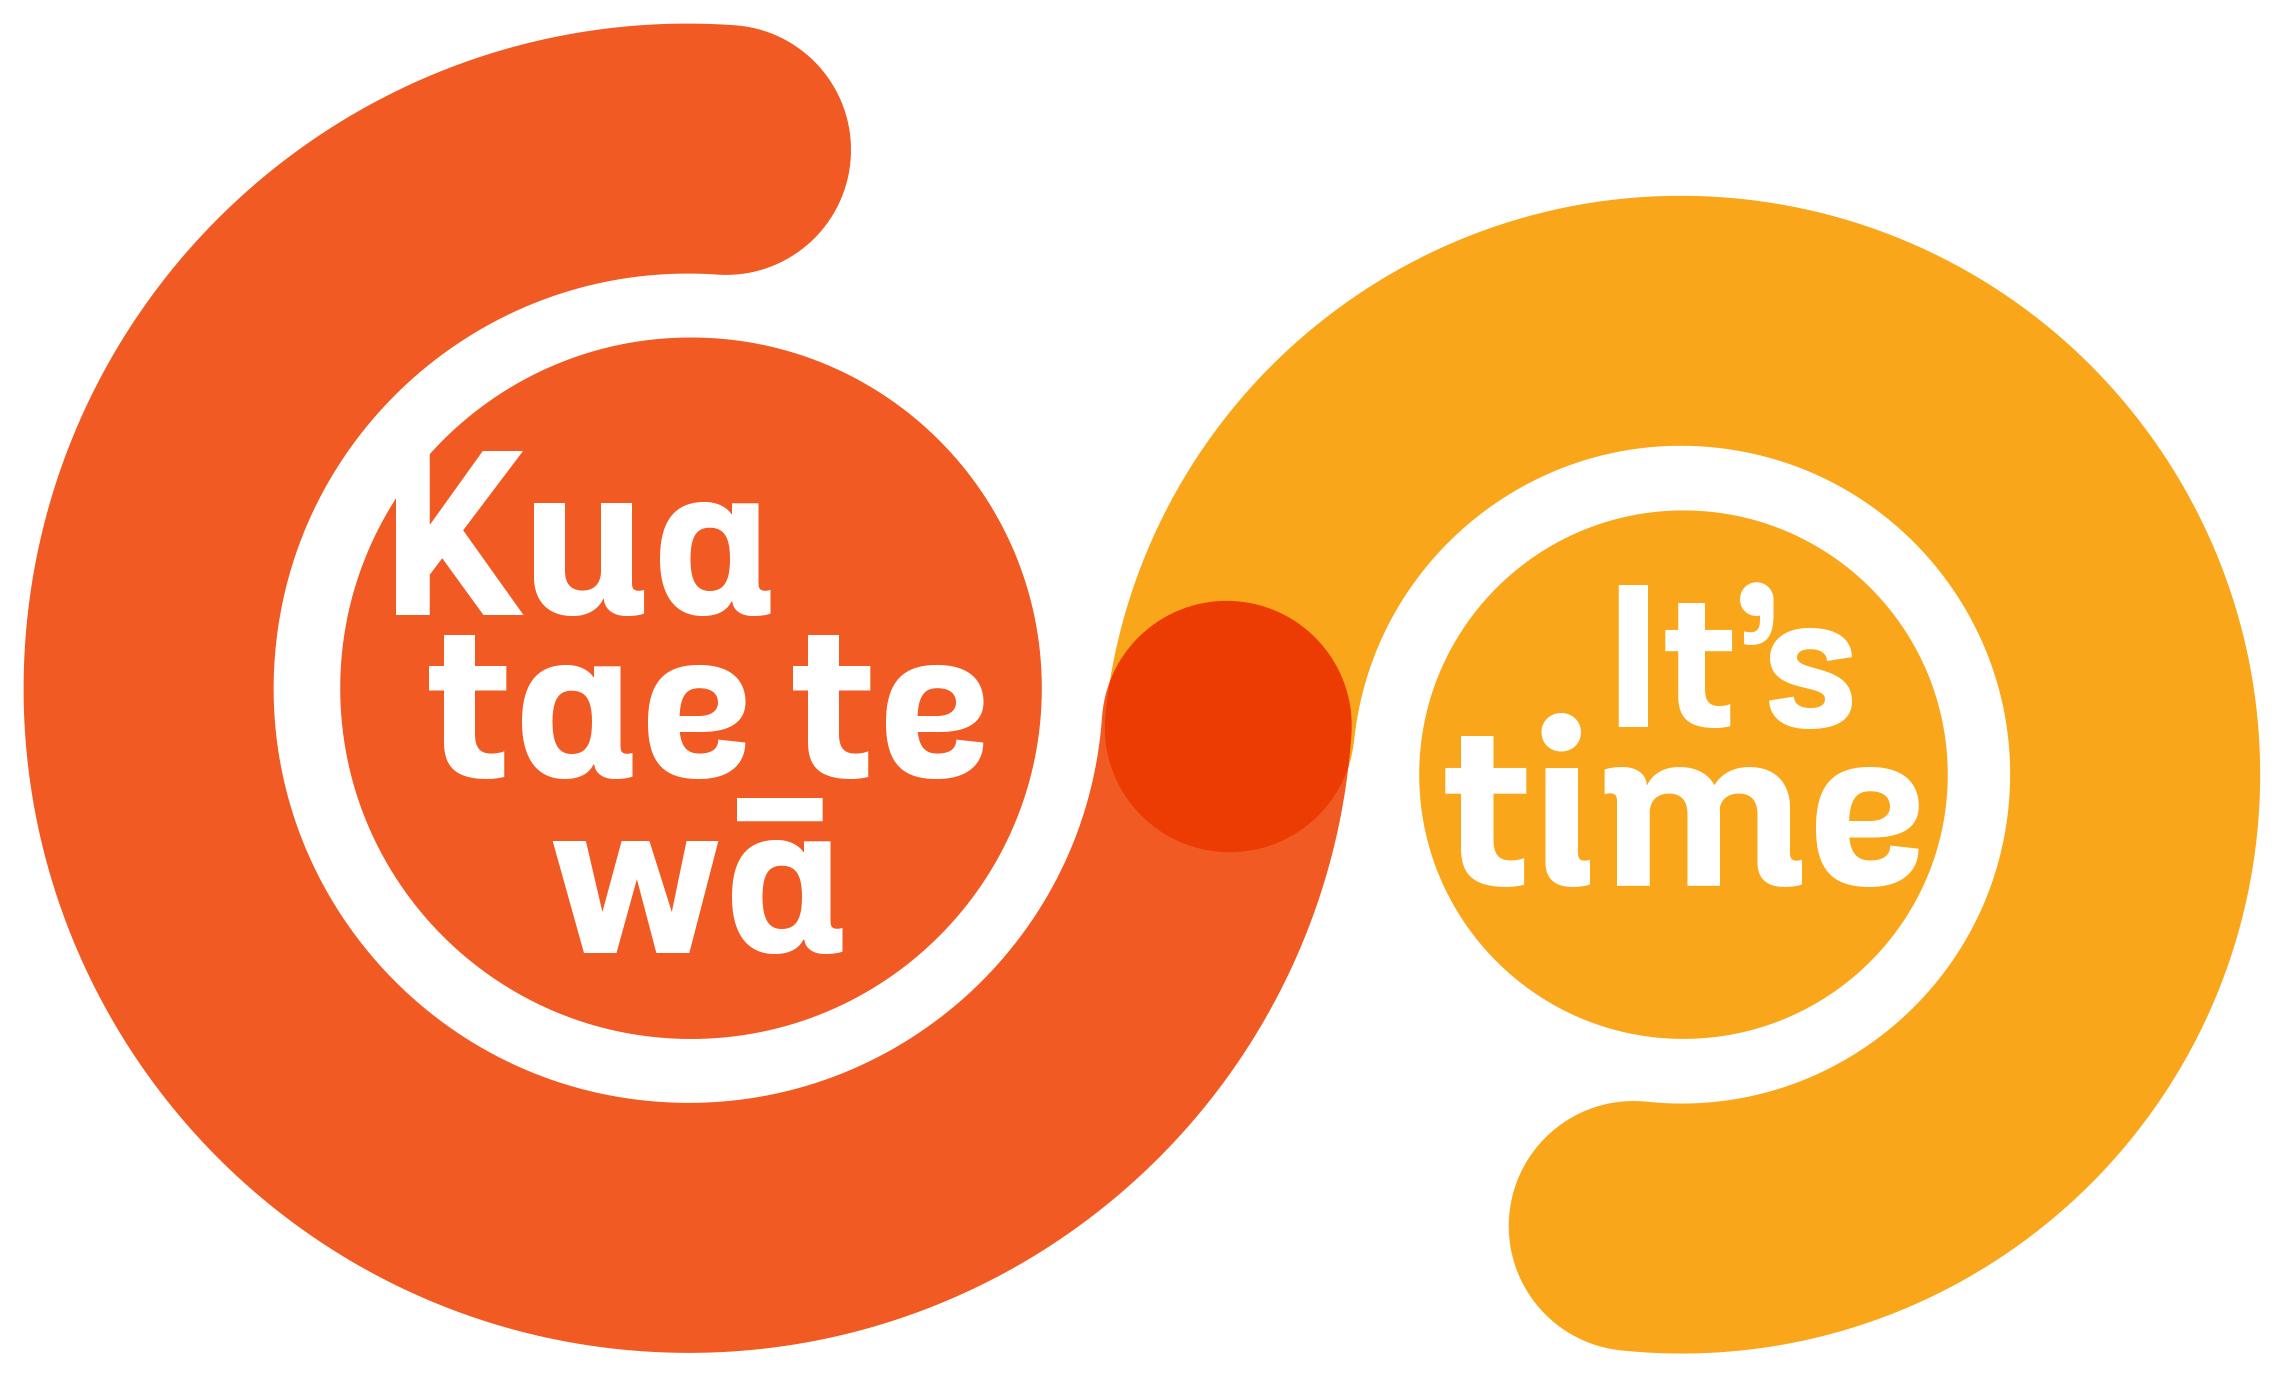 Te WA Logo - It's time—Kua tae te wā